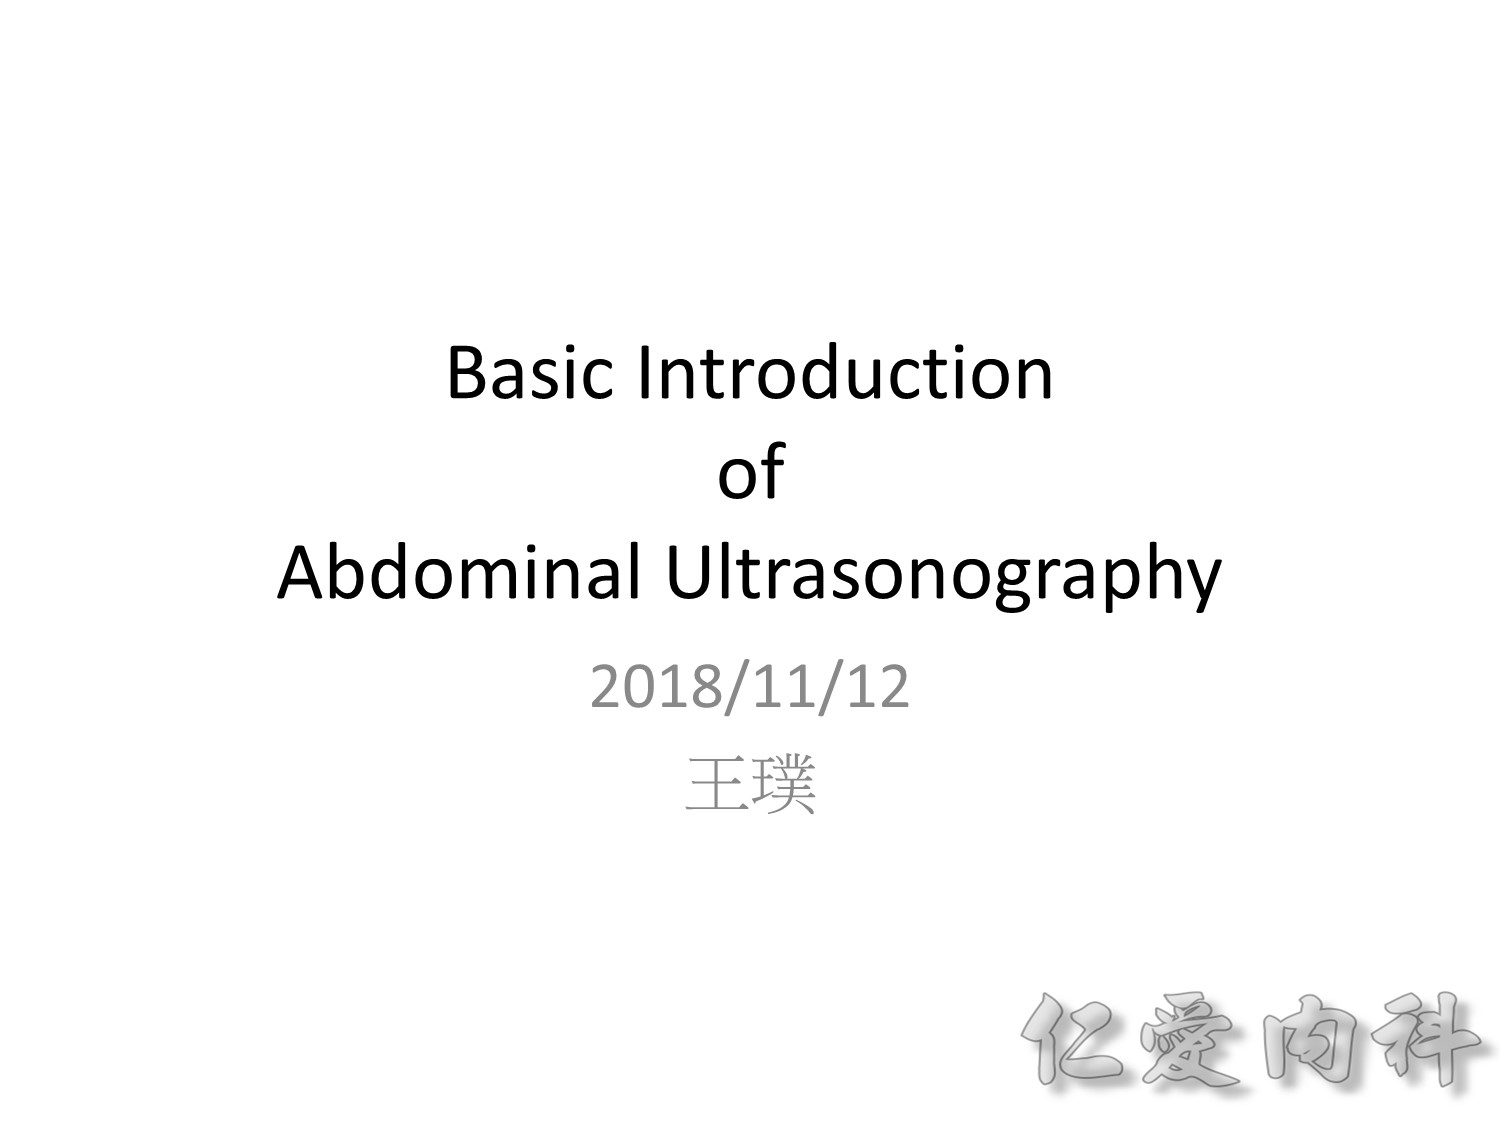 abdomen_US - abdomen-echo-1.jpg